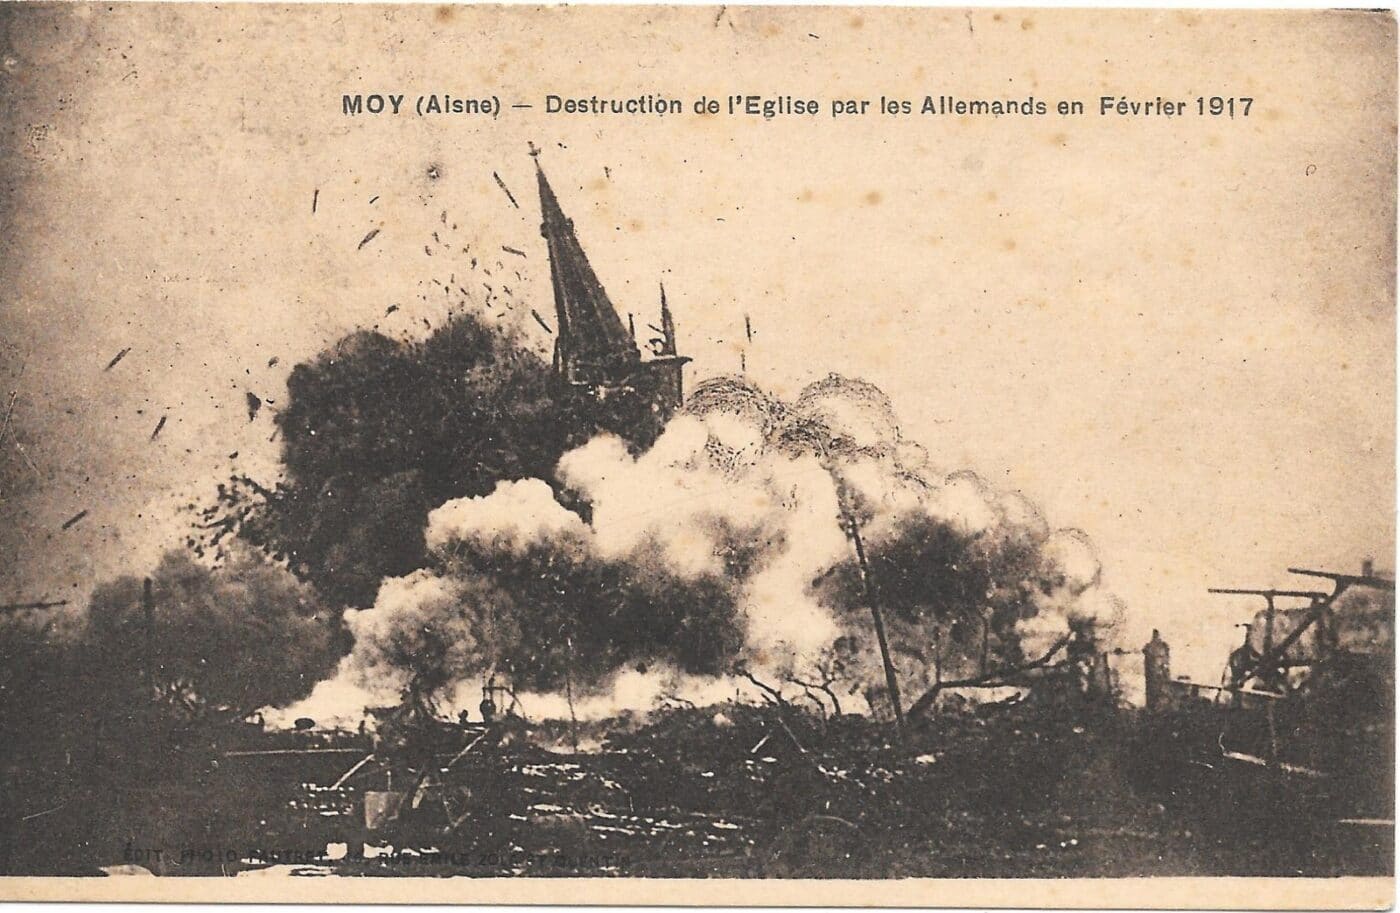 moy de aisne eglise detruite 1917 - Office de tourisme du Saint-Quentinois